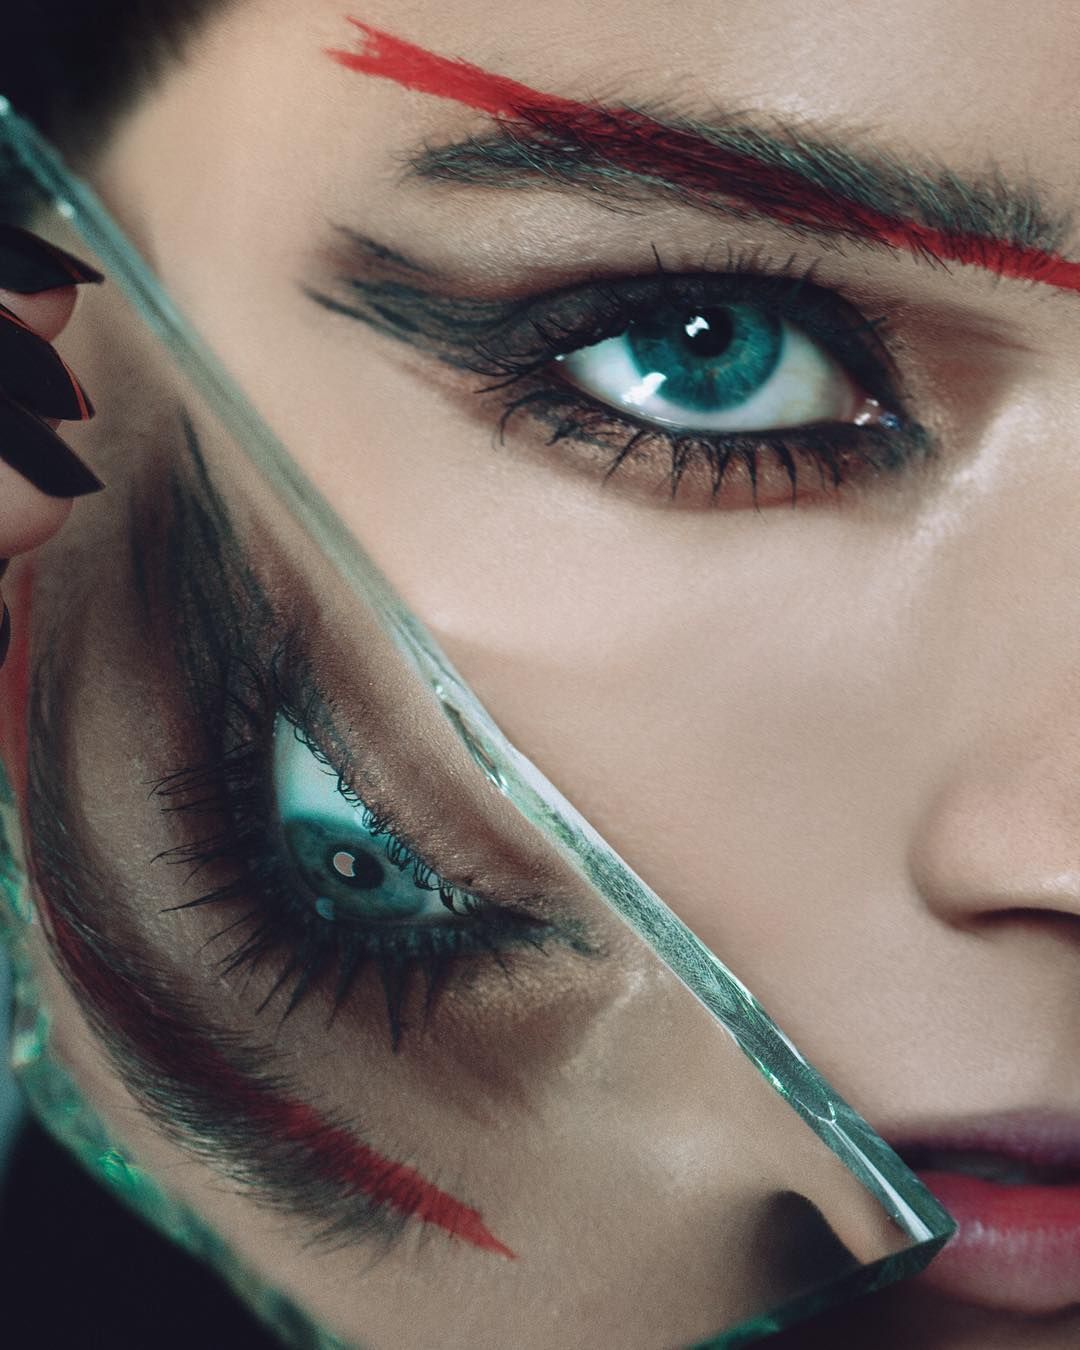 Face Makeup & Face Cosmetics | Sephora - Face Makeup & Face Cosmetics | Sephora -   12 beauty Editorial mirror ideas